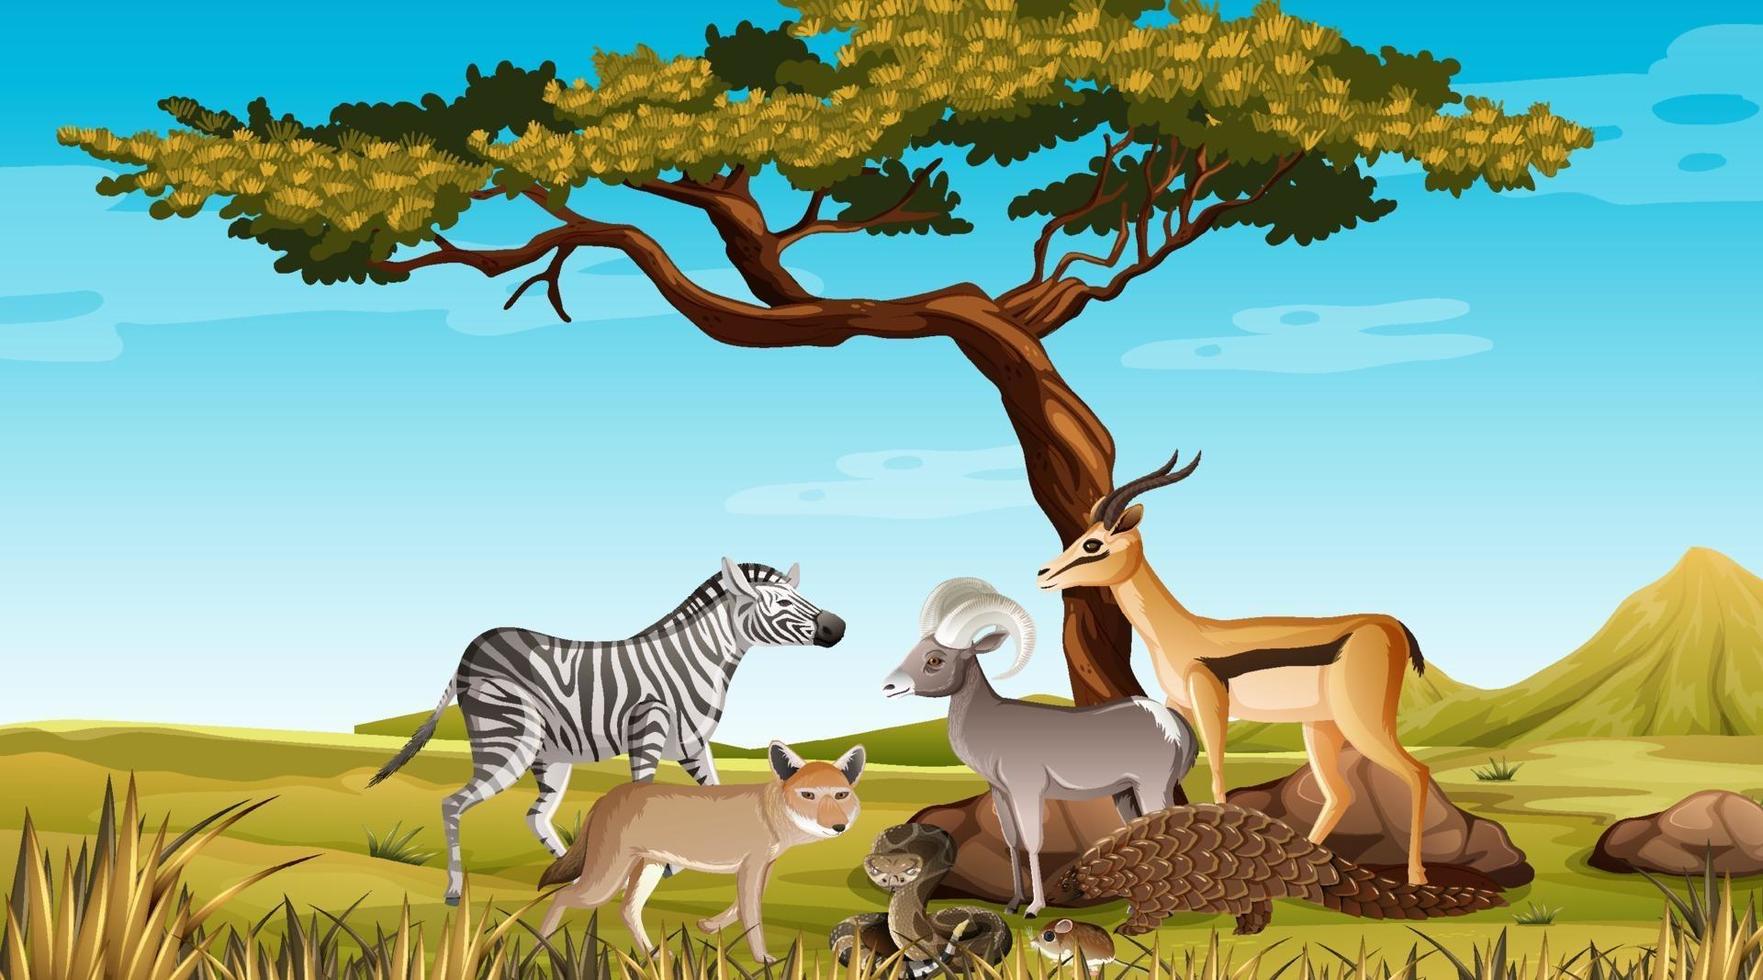 gruppo di animali selvatici africani nella scena della foresta vettore